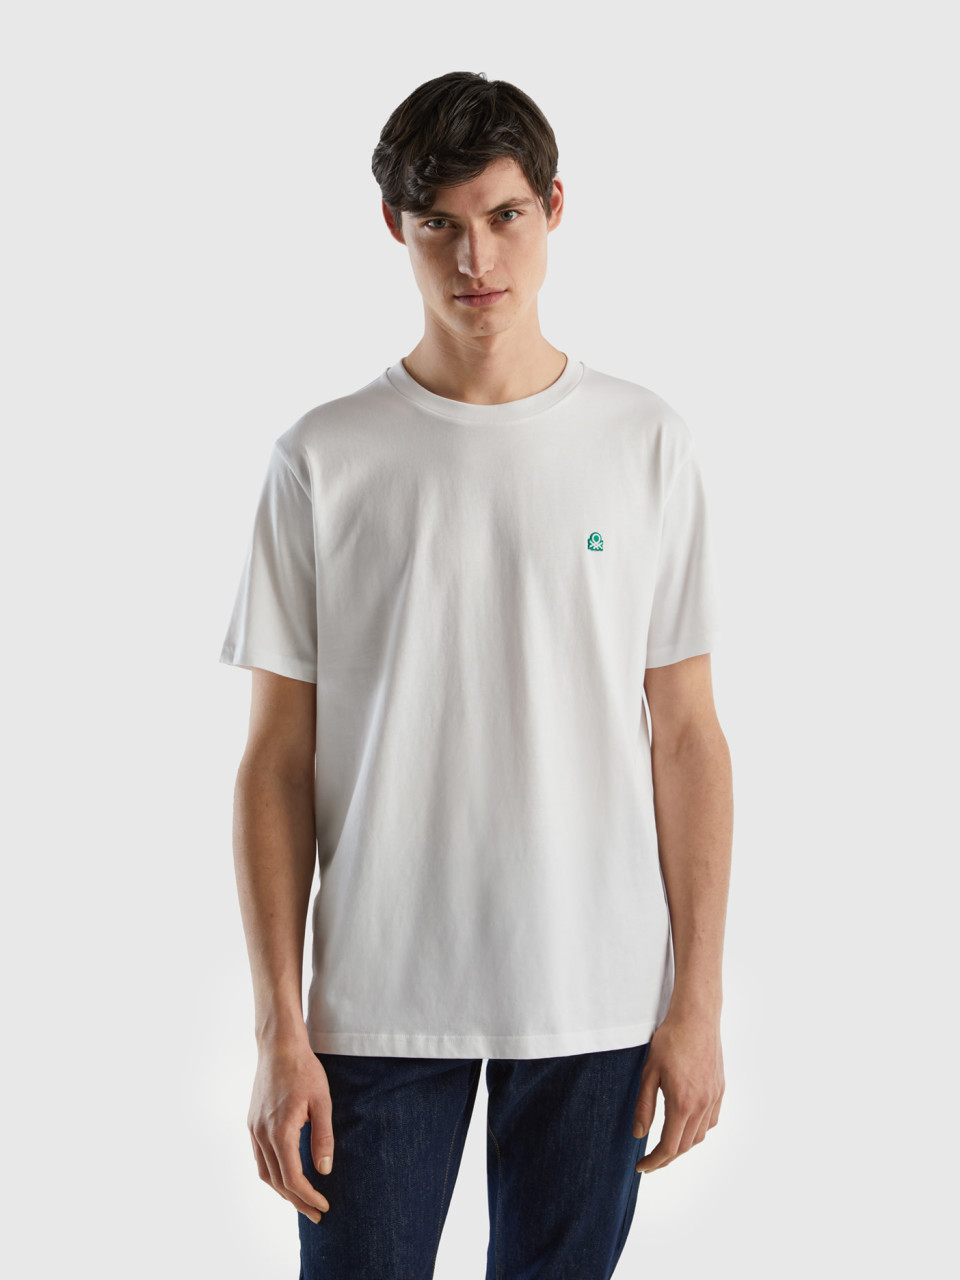 Benetton, T-shirt Basica 100% Cotone Bio, Bianco, Uomo